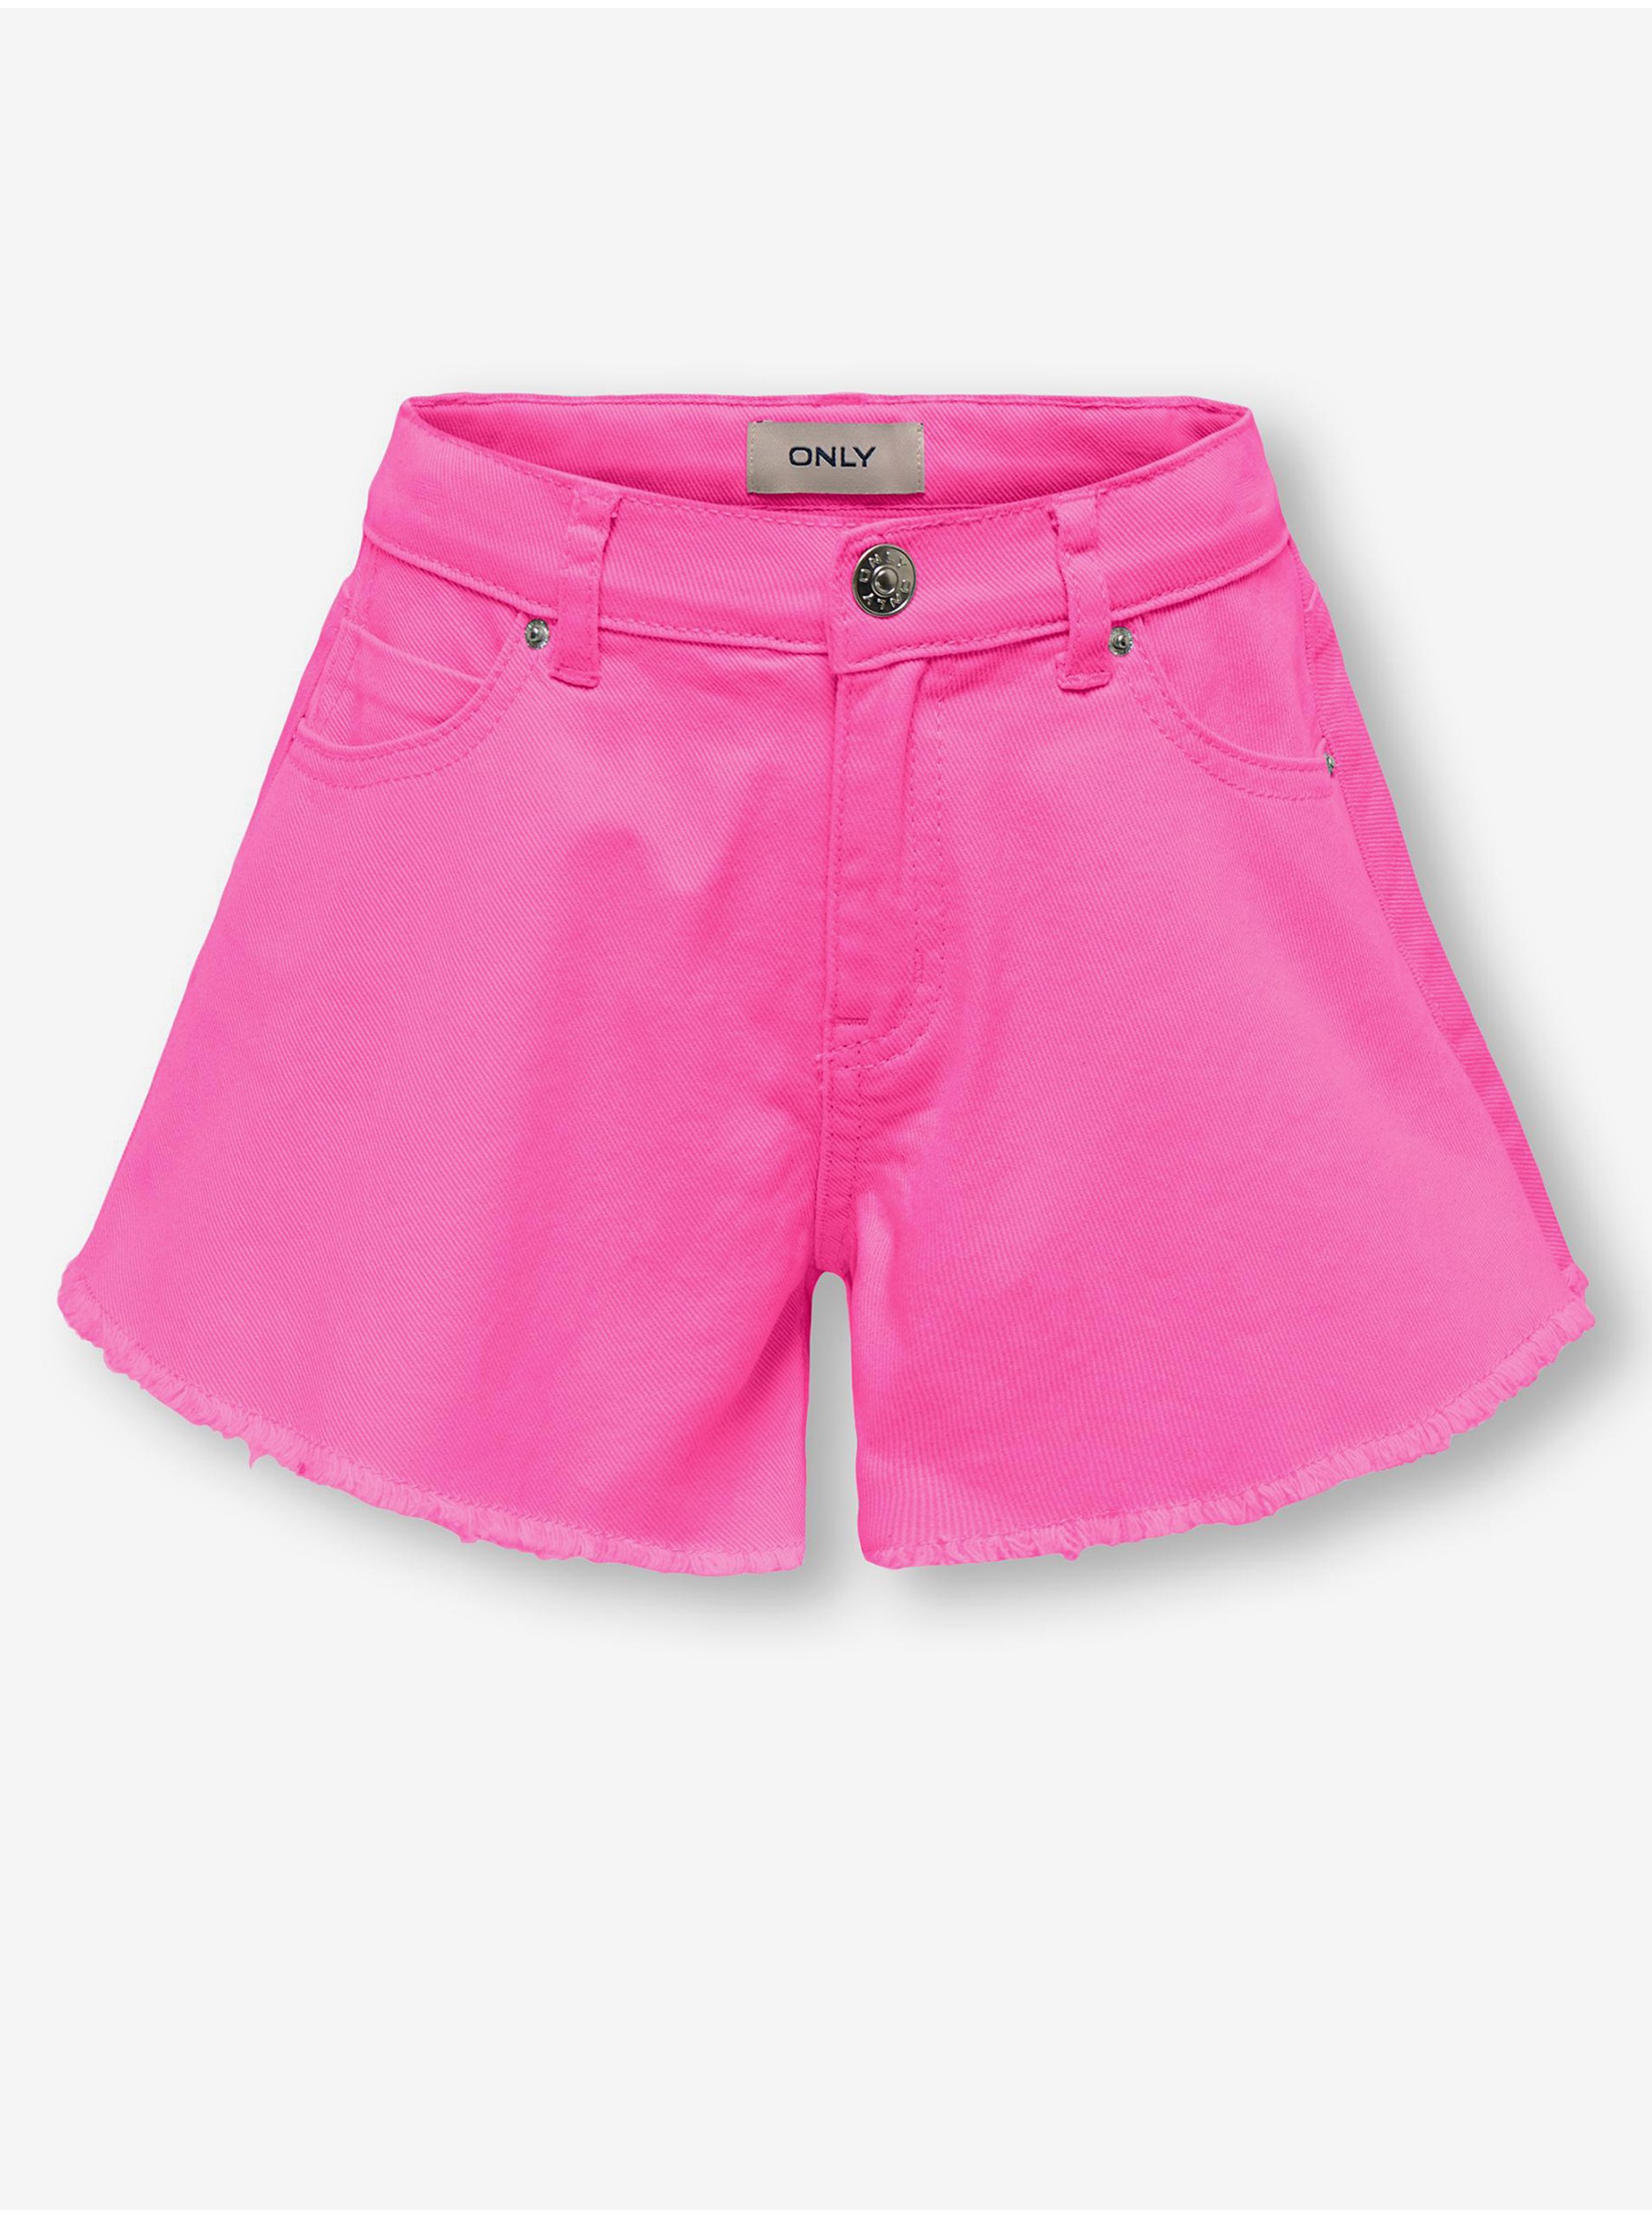 E-shop Tmavě růžové holčičí džínové kraťasy ONLY Chiara